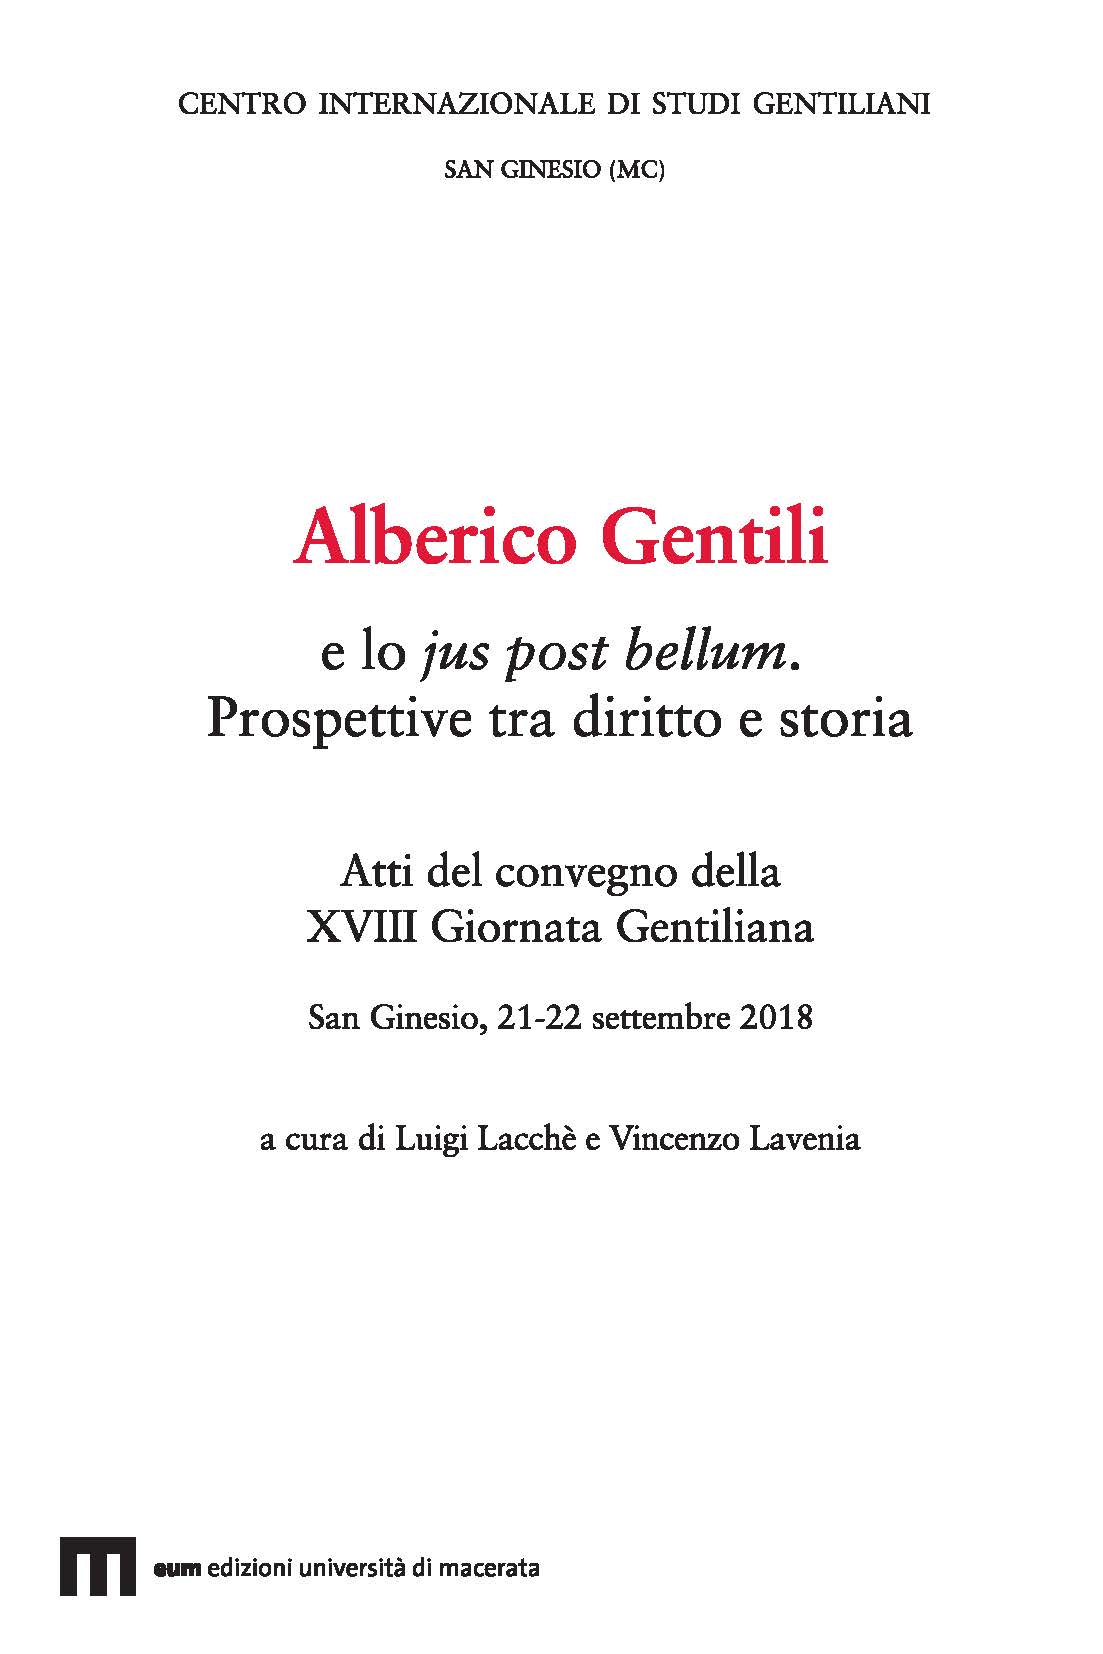 Alberico Gentili e lo jus post bellum. Prospettive tra diritto e storia